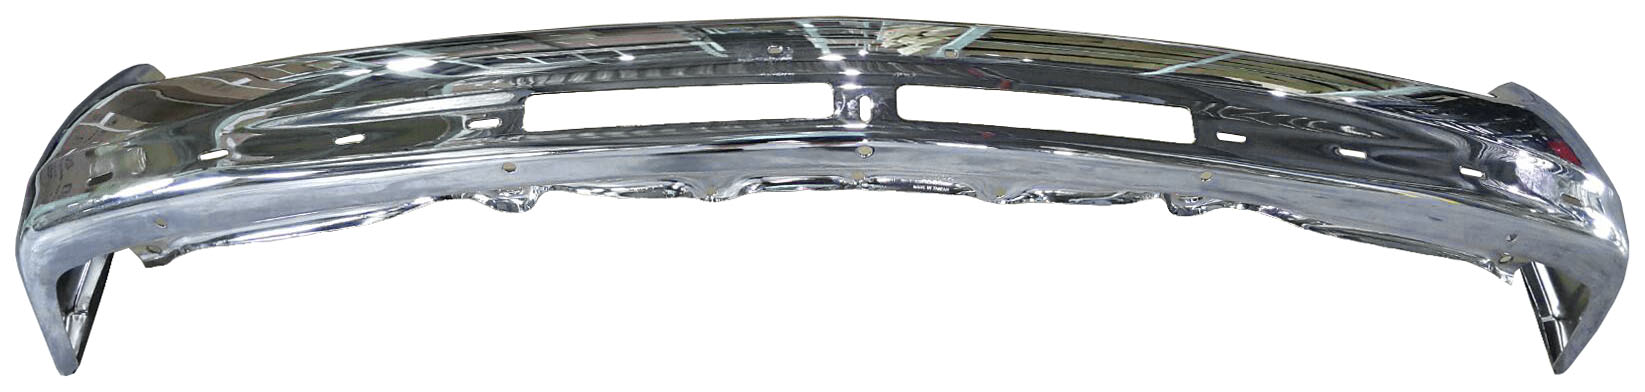 Aftermarket METAL FRONT BUMPERS for CHEVROLET - SILVERADO 1500, SILVERADO 1500,99-02,Front bumper face bar